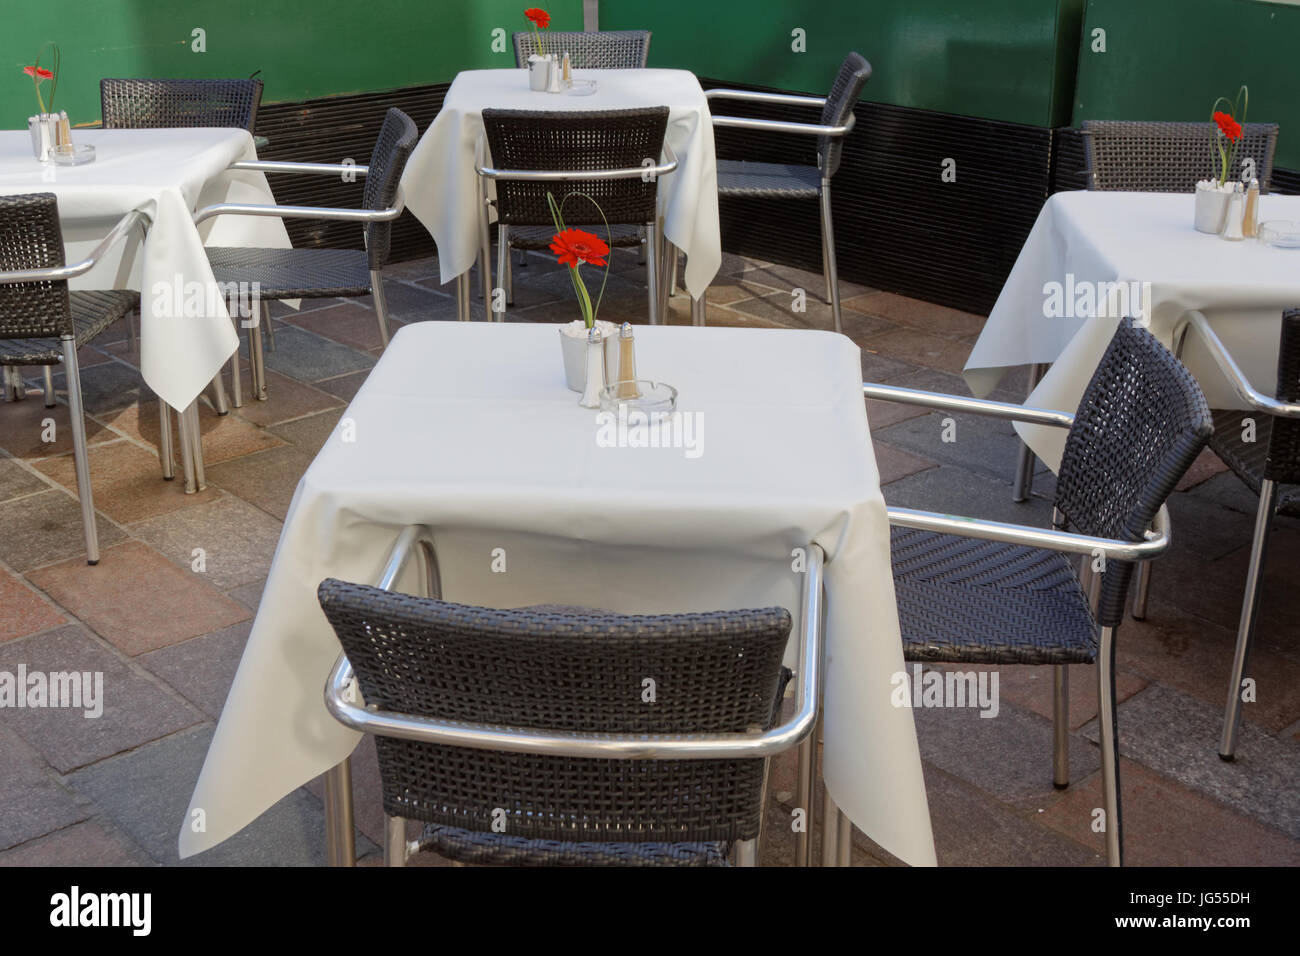 Tabelle in un ristorante vuoto con tovaglia bianca e romantico unico red rose speed dating Foto Stock